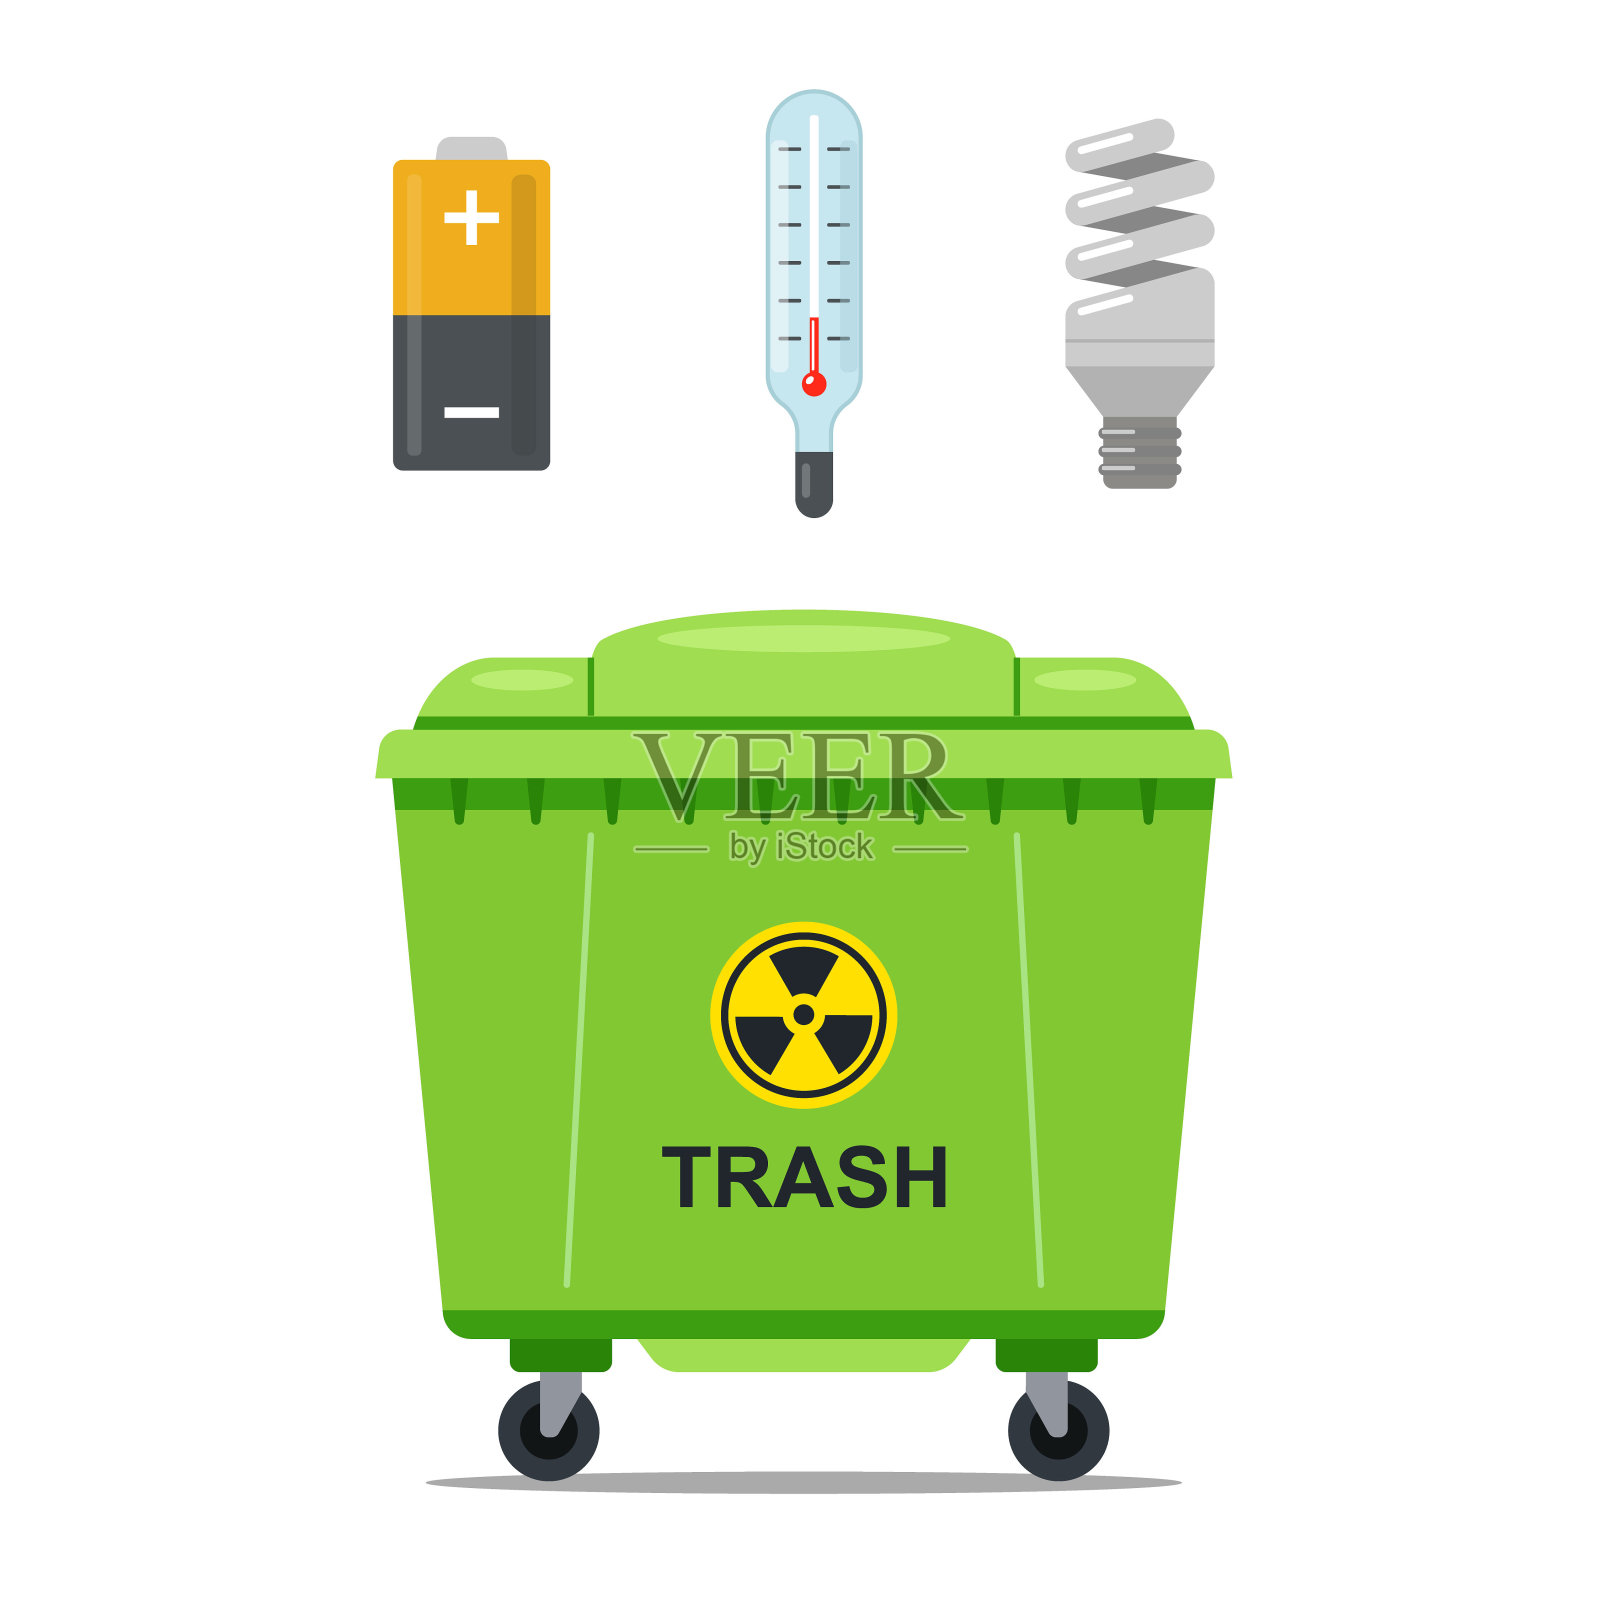 存放危险垃圾的废铁容器插画图片素材